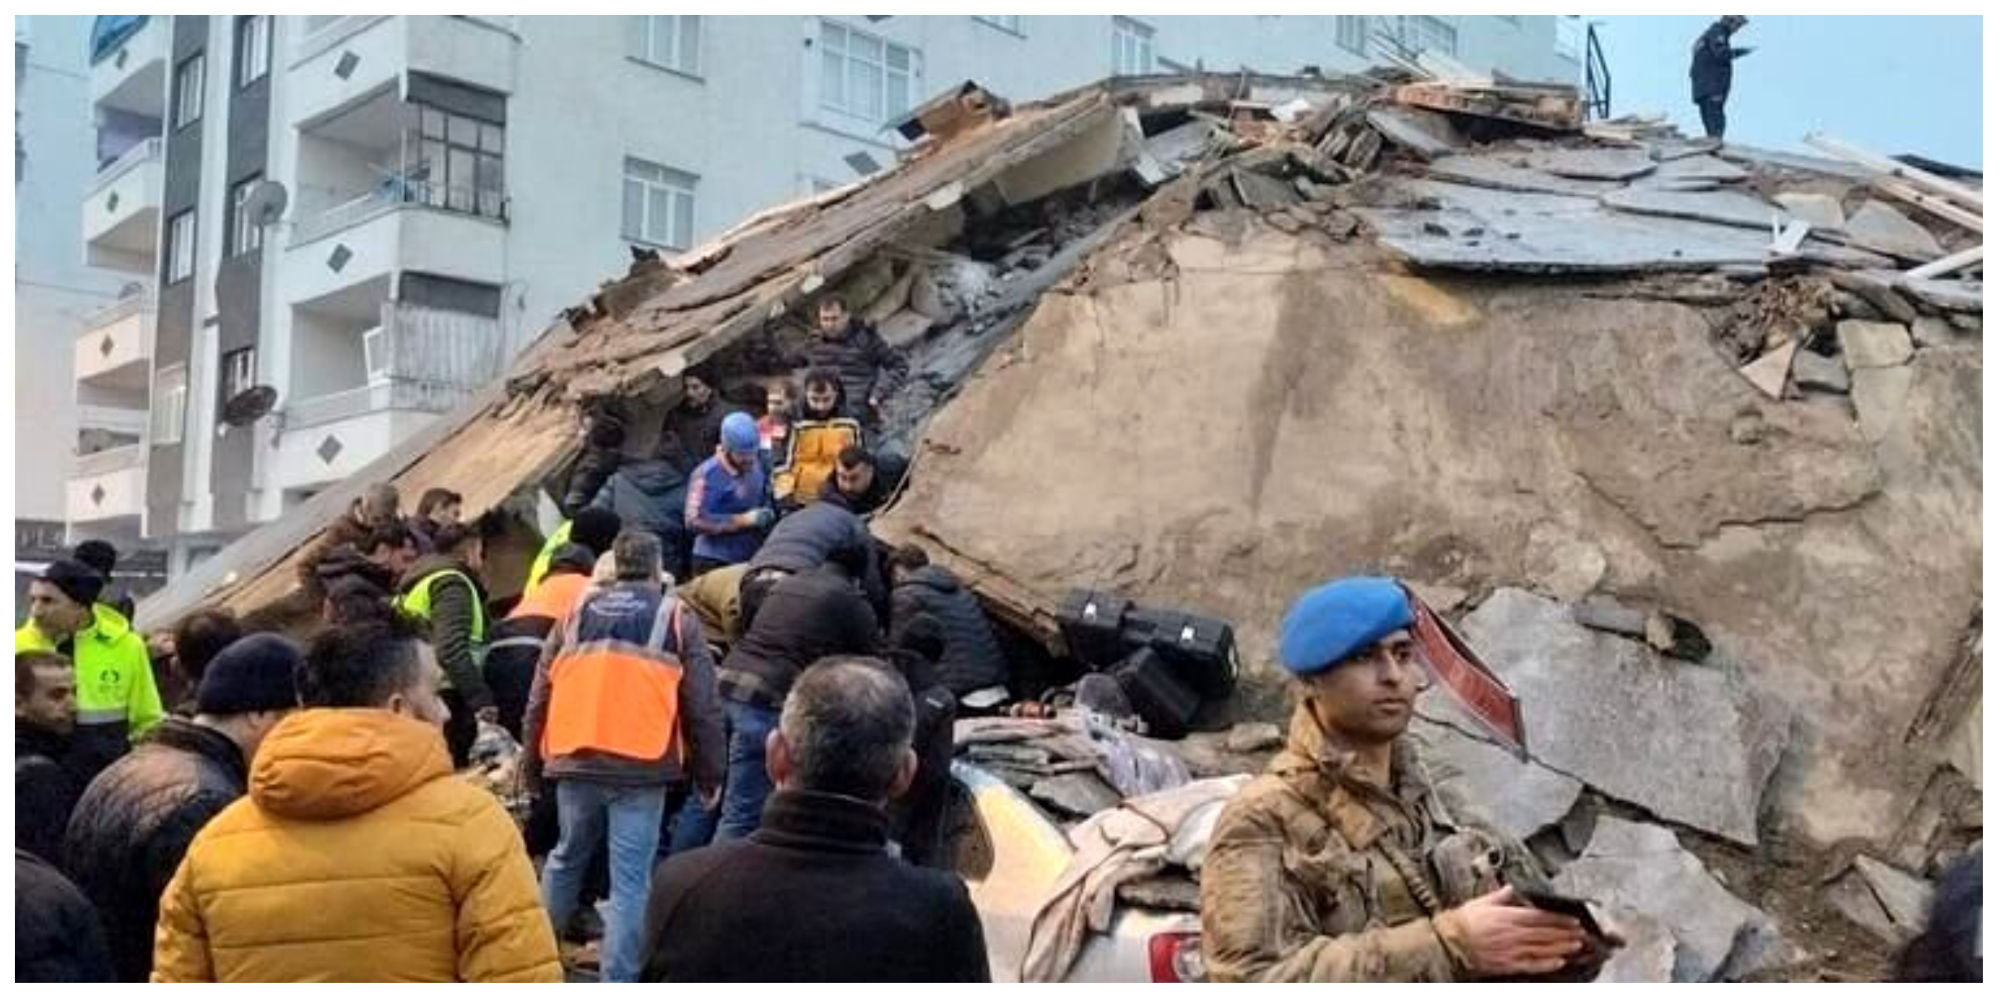 مرگ دلخراش 4 نفر در تصادف وحشتناک هنگام فرار از زلزله + فیلم